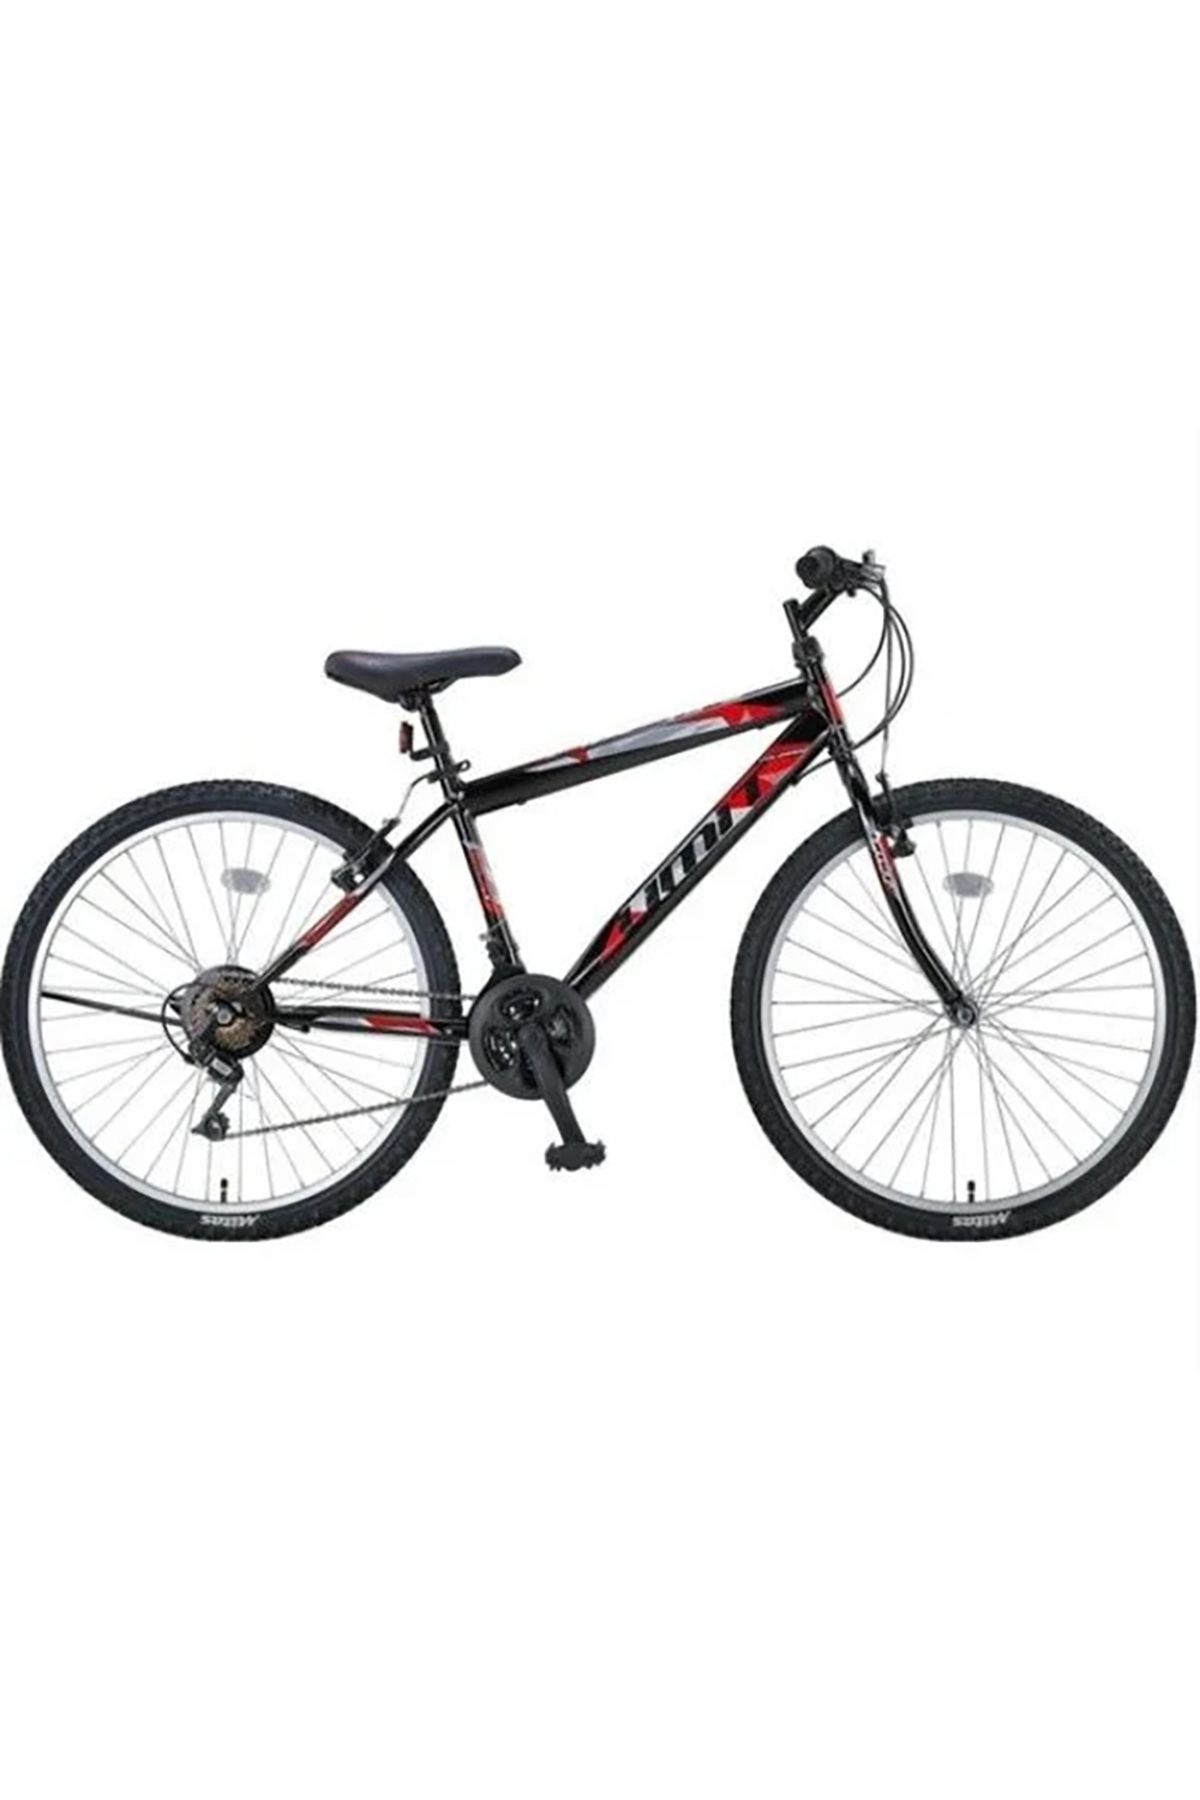 Ümit 2401 Colorado 24 Jant 21-v Vb Siyah-Kırmızı Erkek Dağ Bisikleti